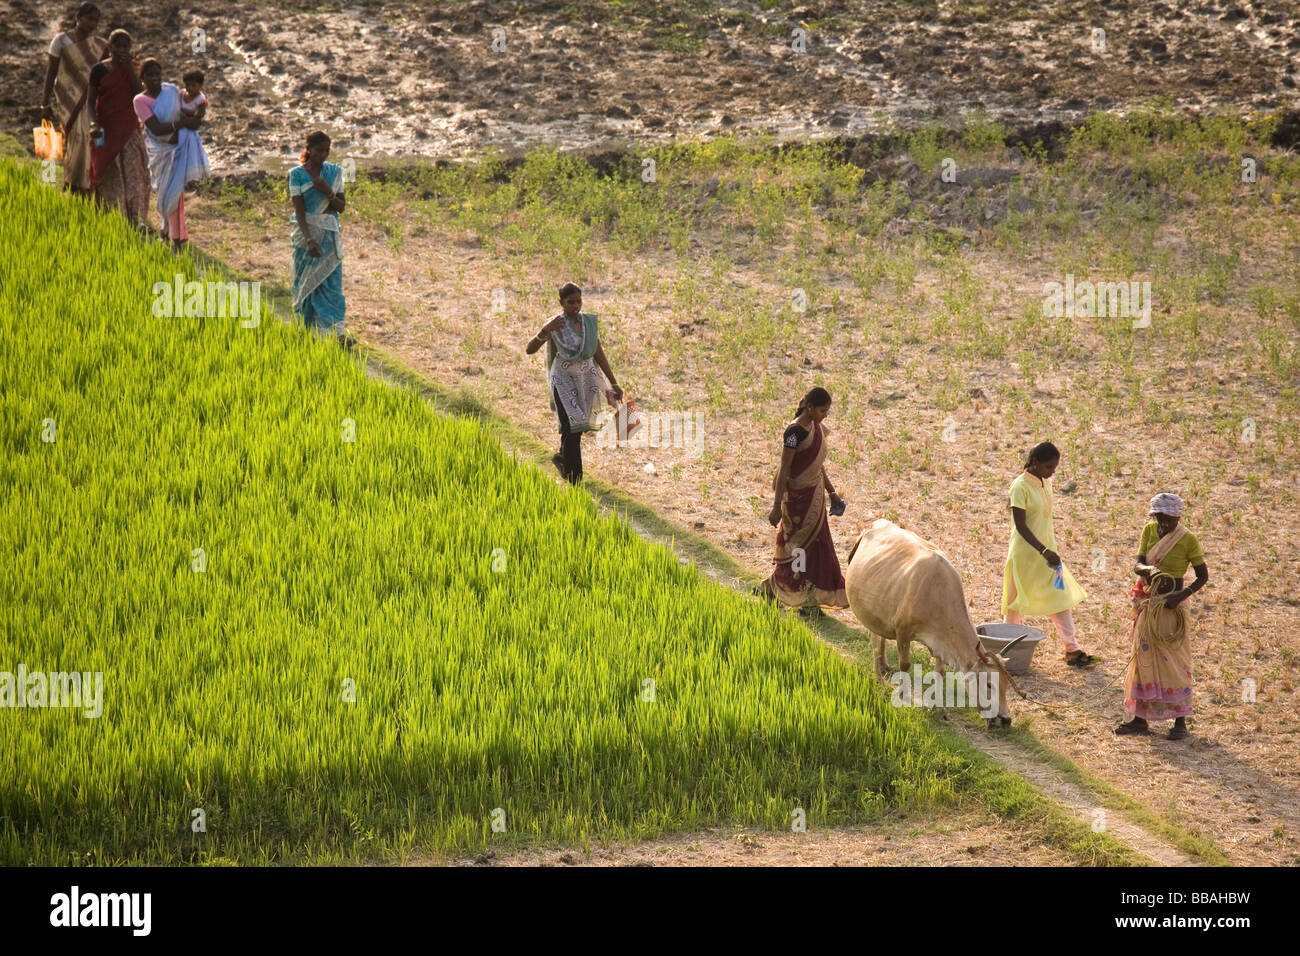 Frauen gehen durch ein Feld in Tamil Nadu. Indien Reis wächst auf der linken Seite des Bildes. Stockfoto